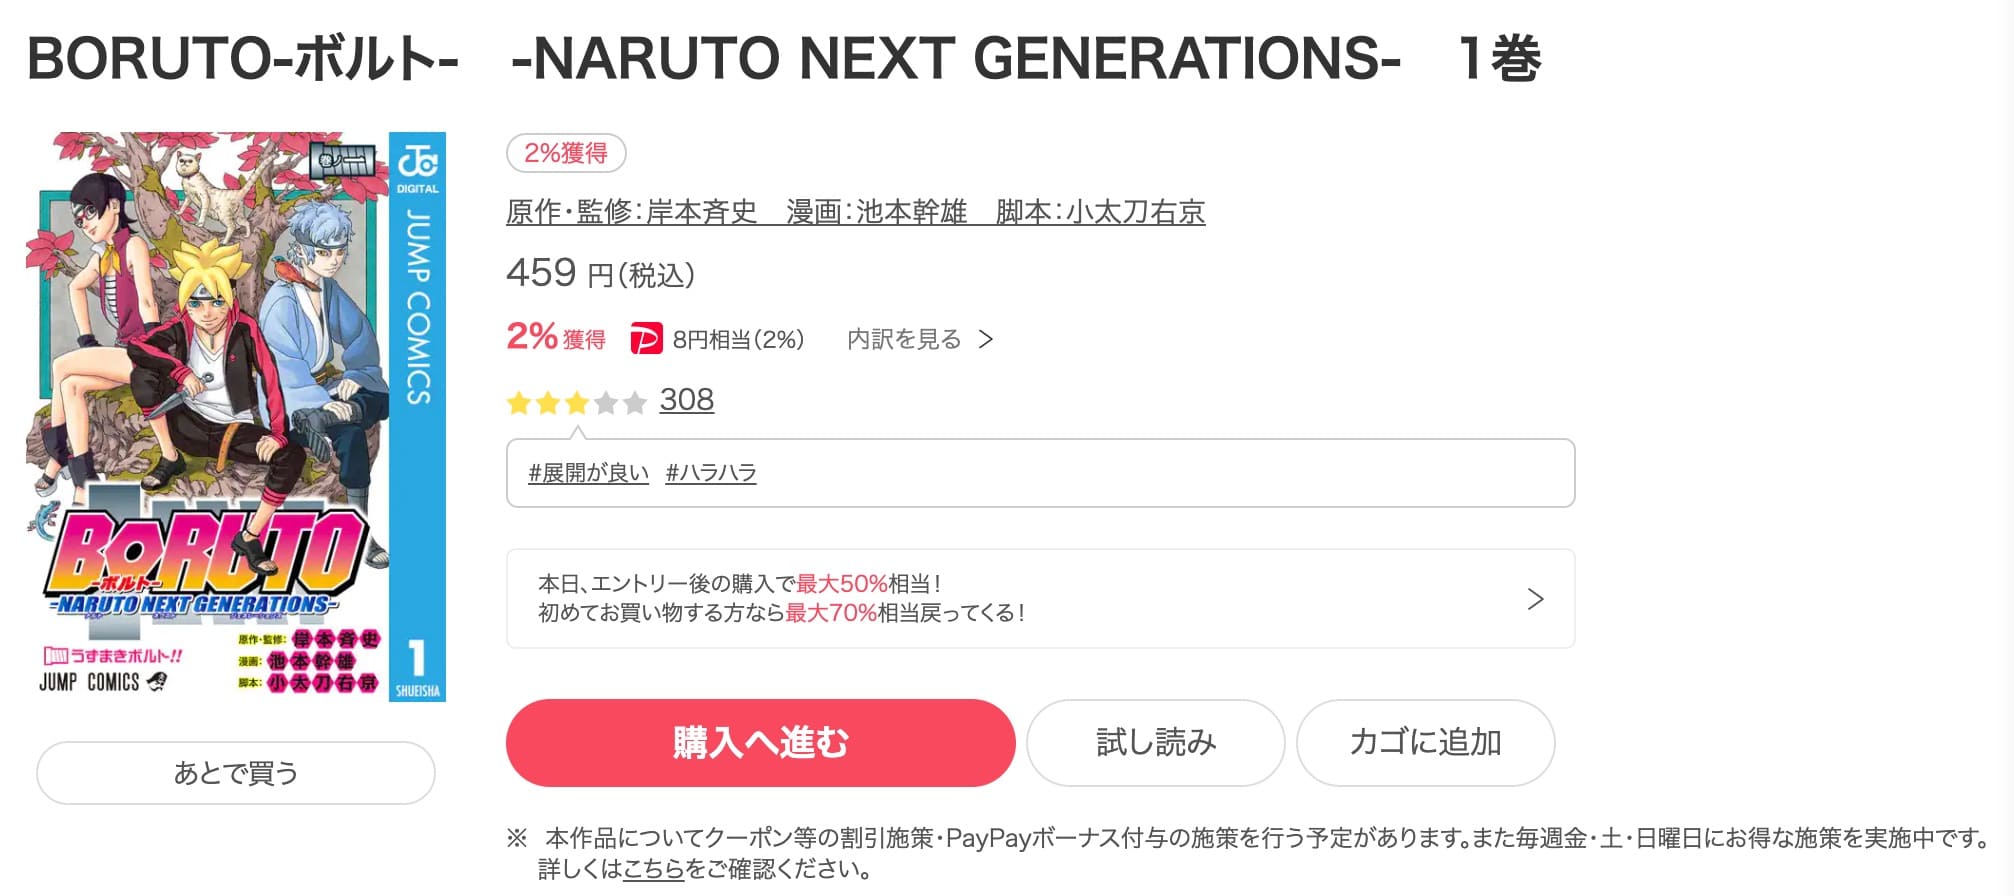 BORUTO-ボルト-NARUTO NEXT GENERATIONSebookjapan